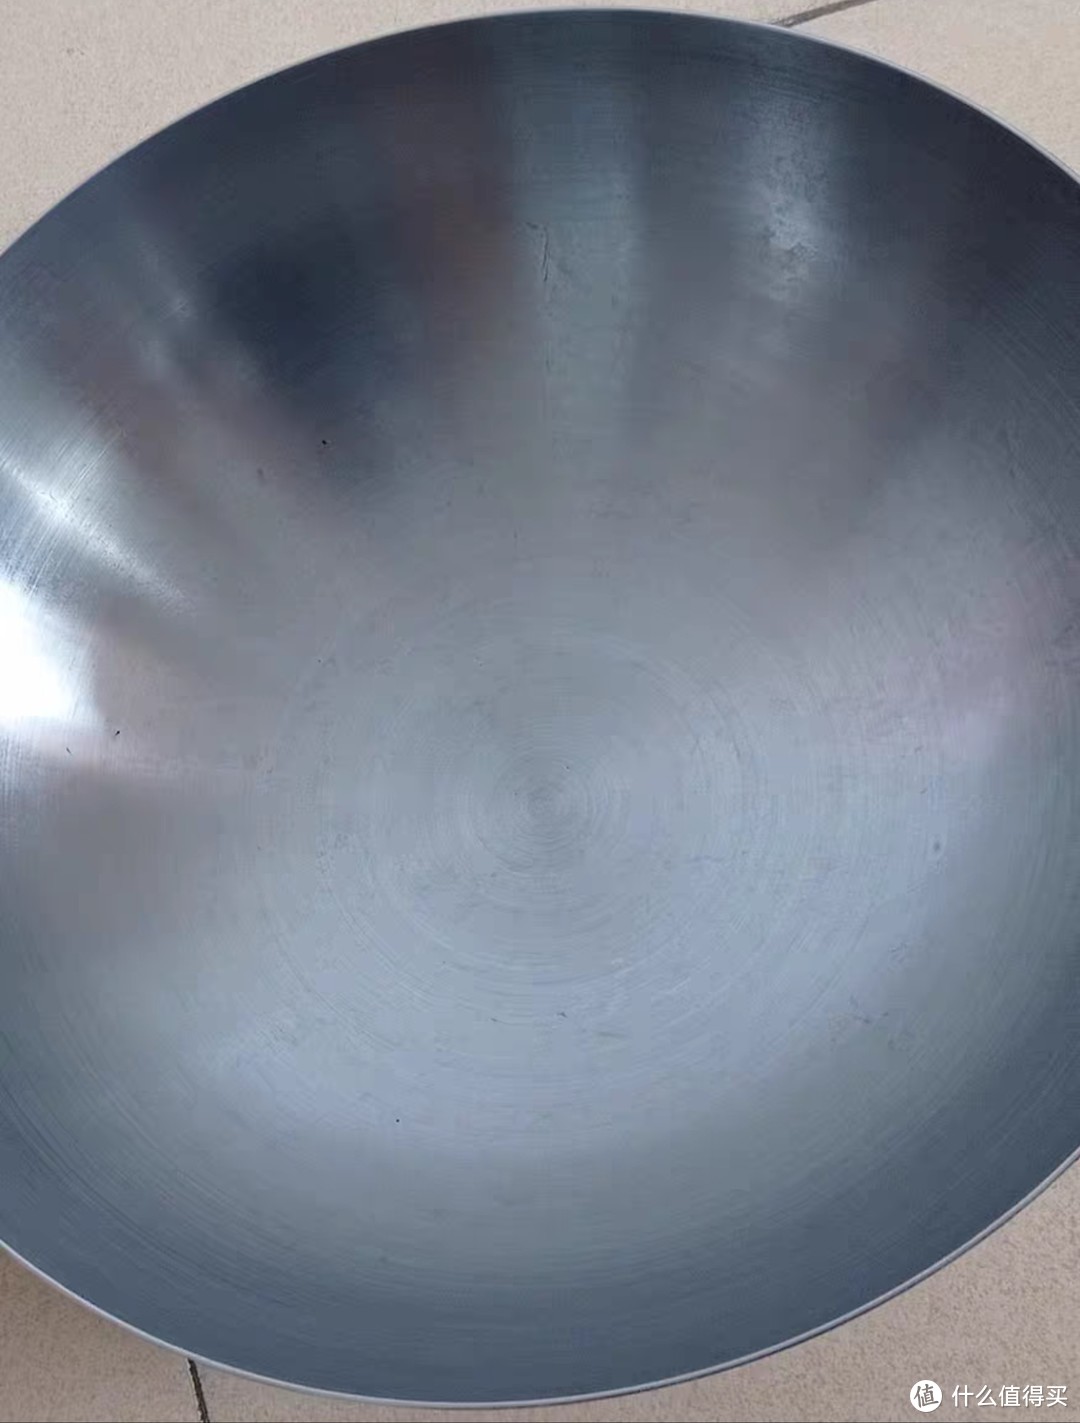 家庭炒菜锅还是用铁质无涂层的好